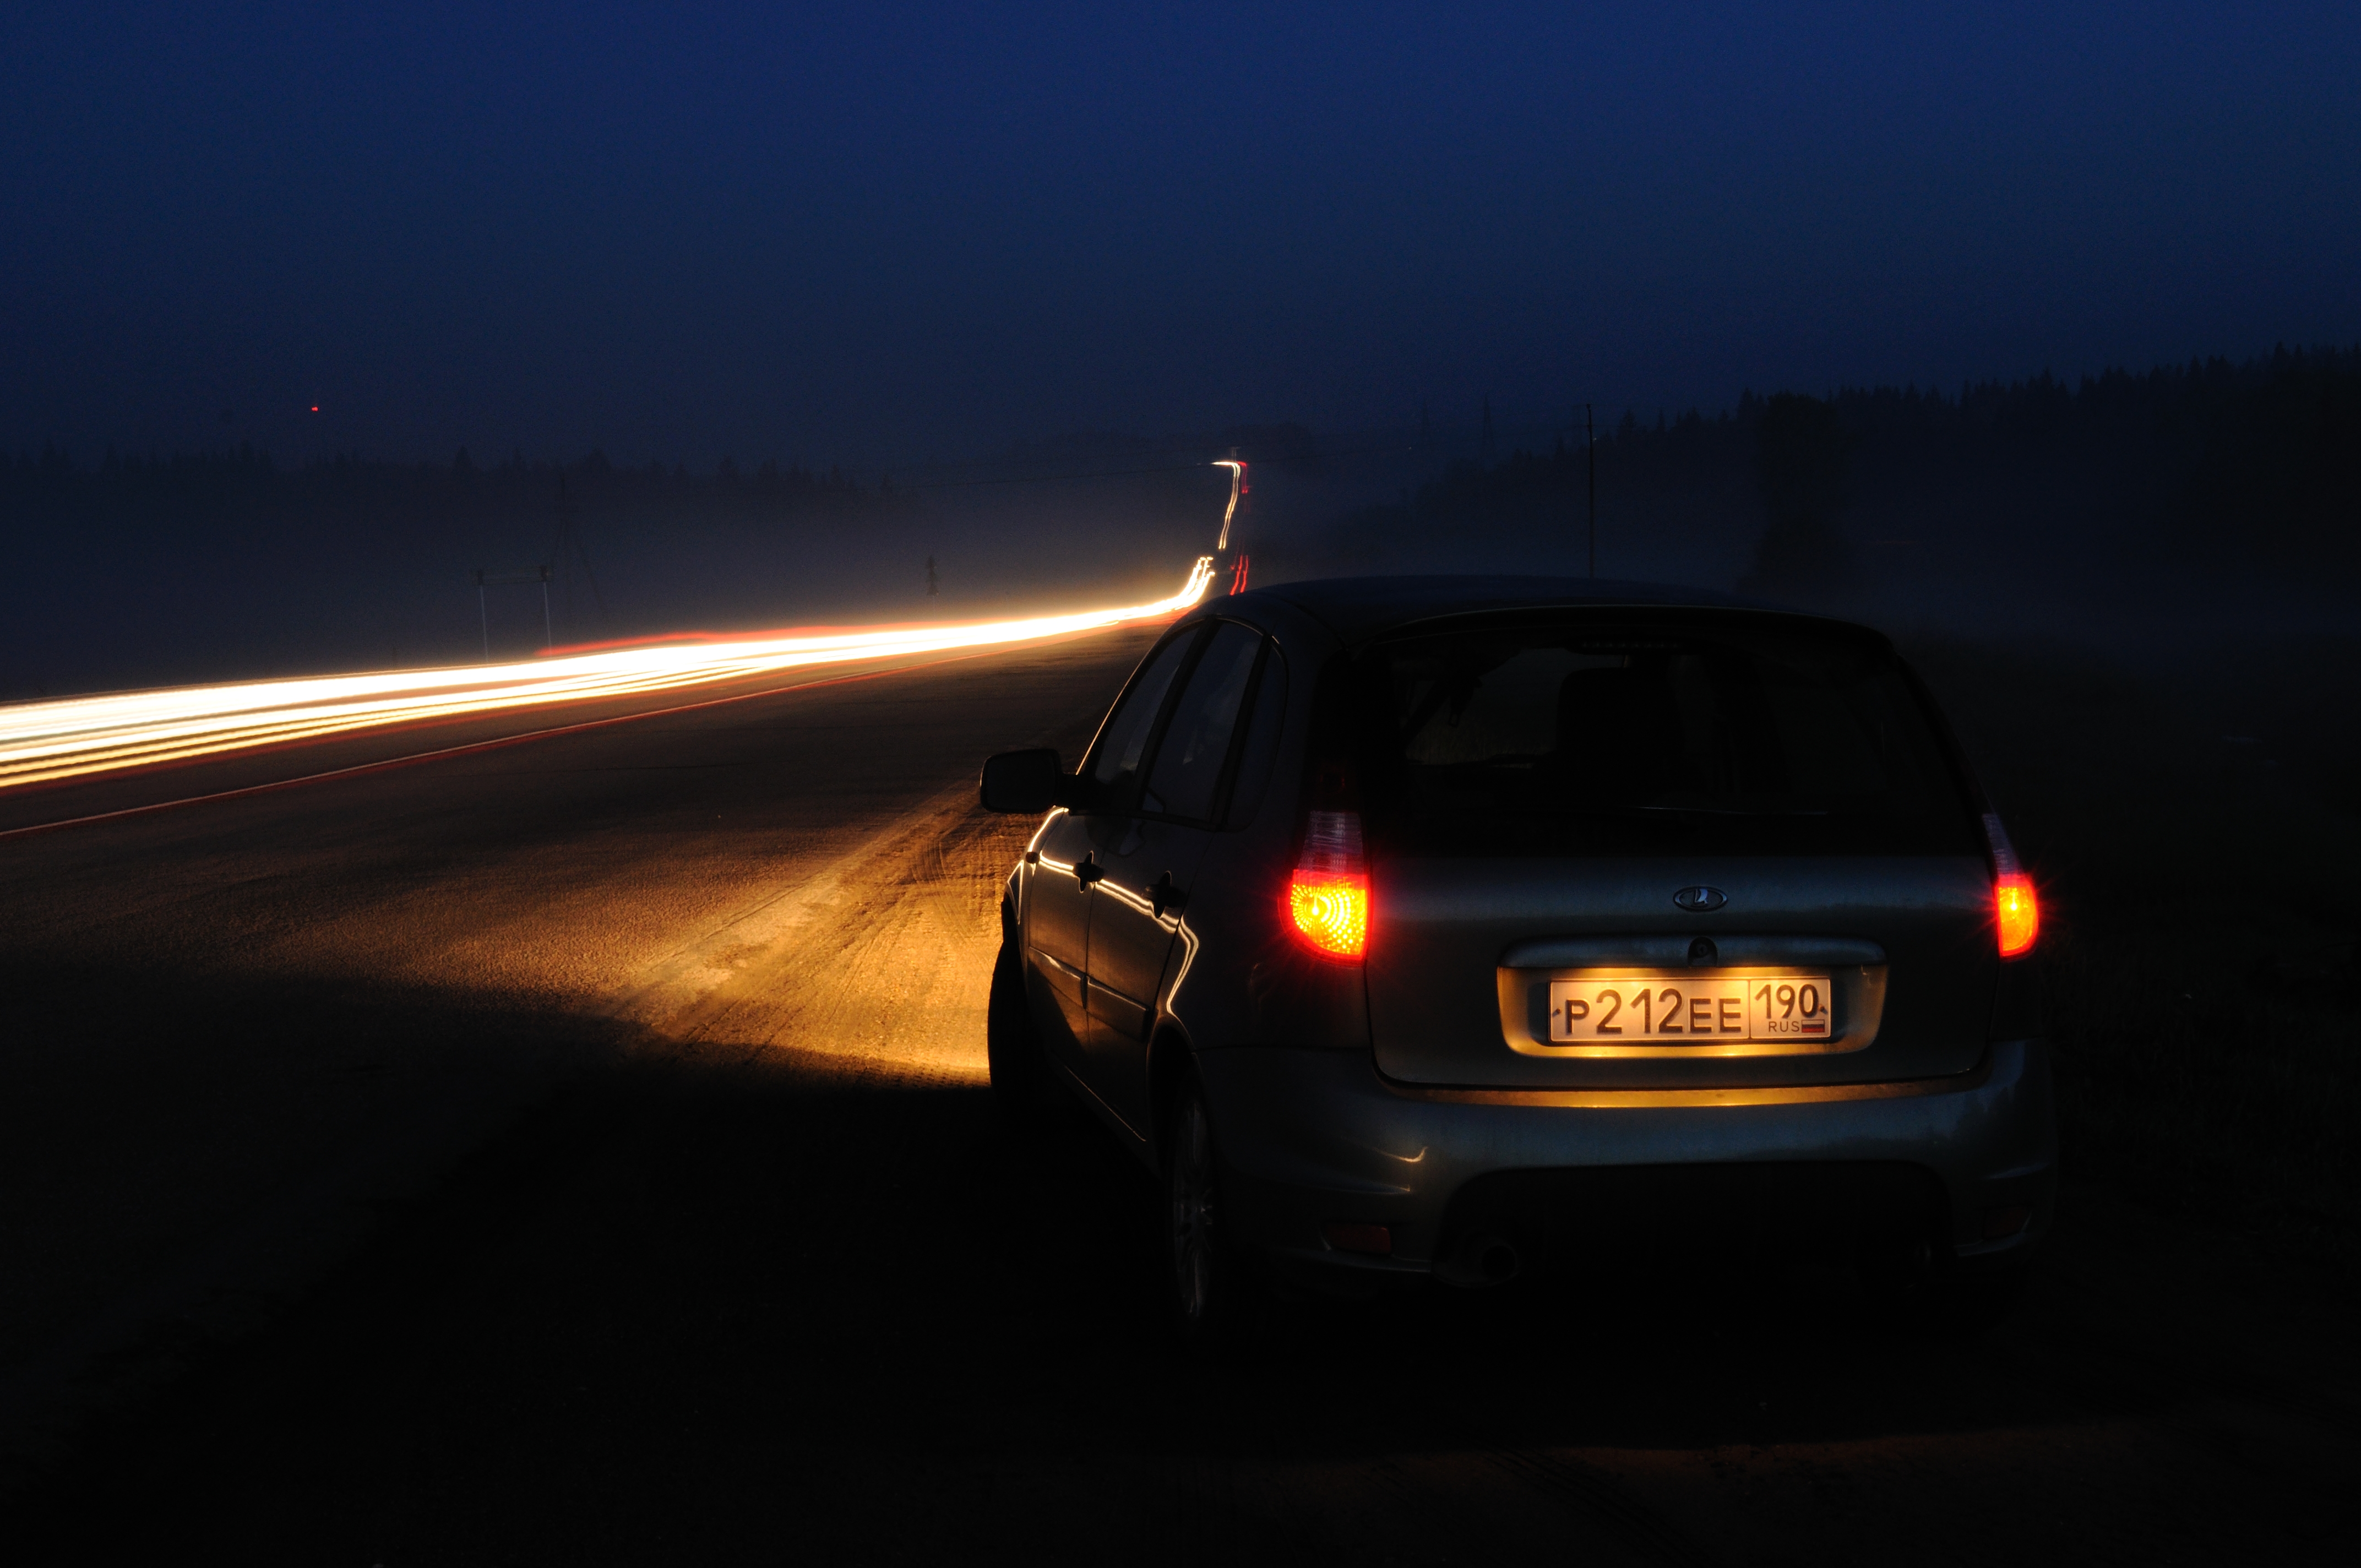 Свет в машине фары. Машина ночью на дороге. Машина на трассе ночью. Ночь трасса машина. Фары автомобиля ночью.